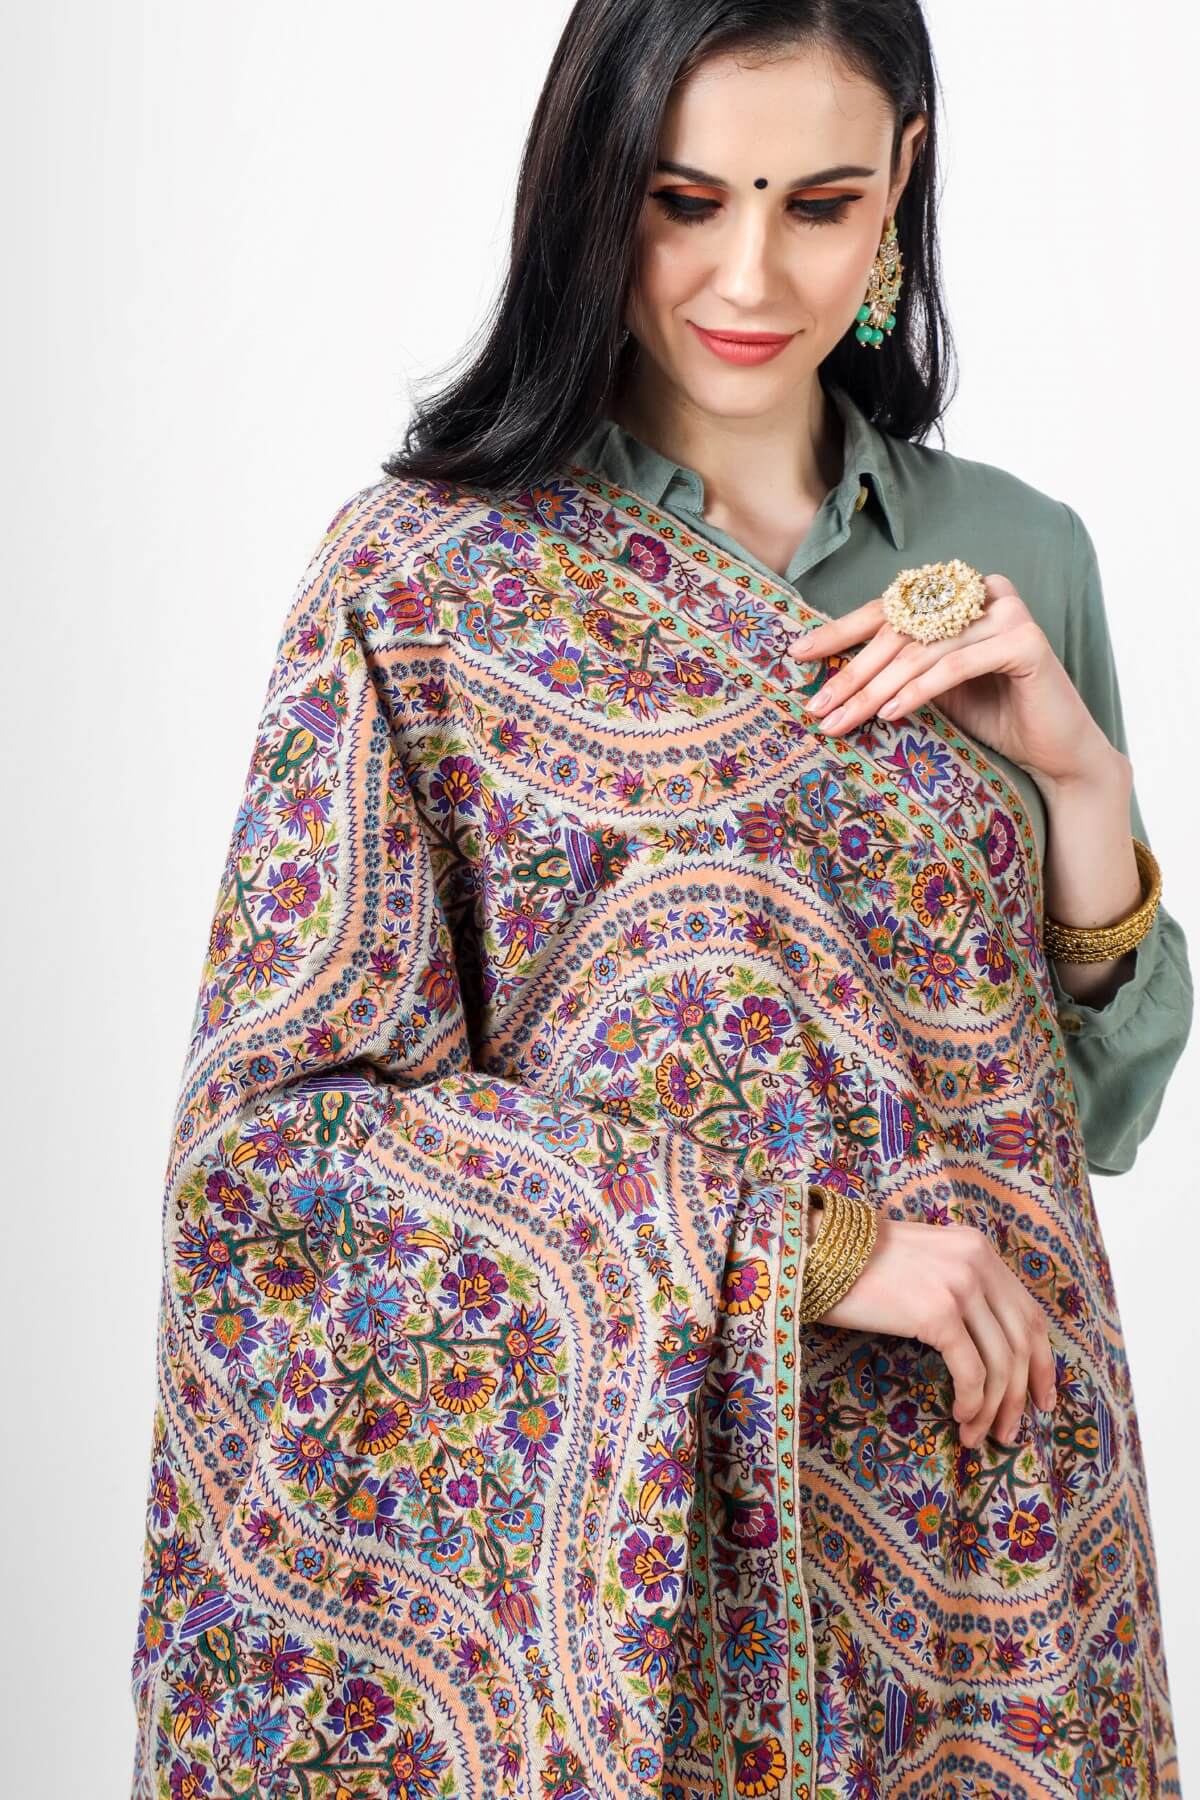 ONLINE PASHMINA - original pashmina shawls, Global Elegance – Explore Genuine G.I. Pashmina Shawls in Delhi, Mumbai, Kolkata, Srinagar, USA, UK, Canada, Australia, France, Germany, Italy, Japan, Netherlands, and the UAE